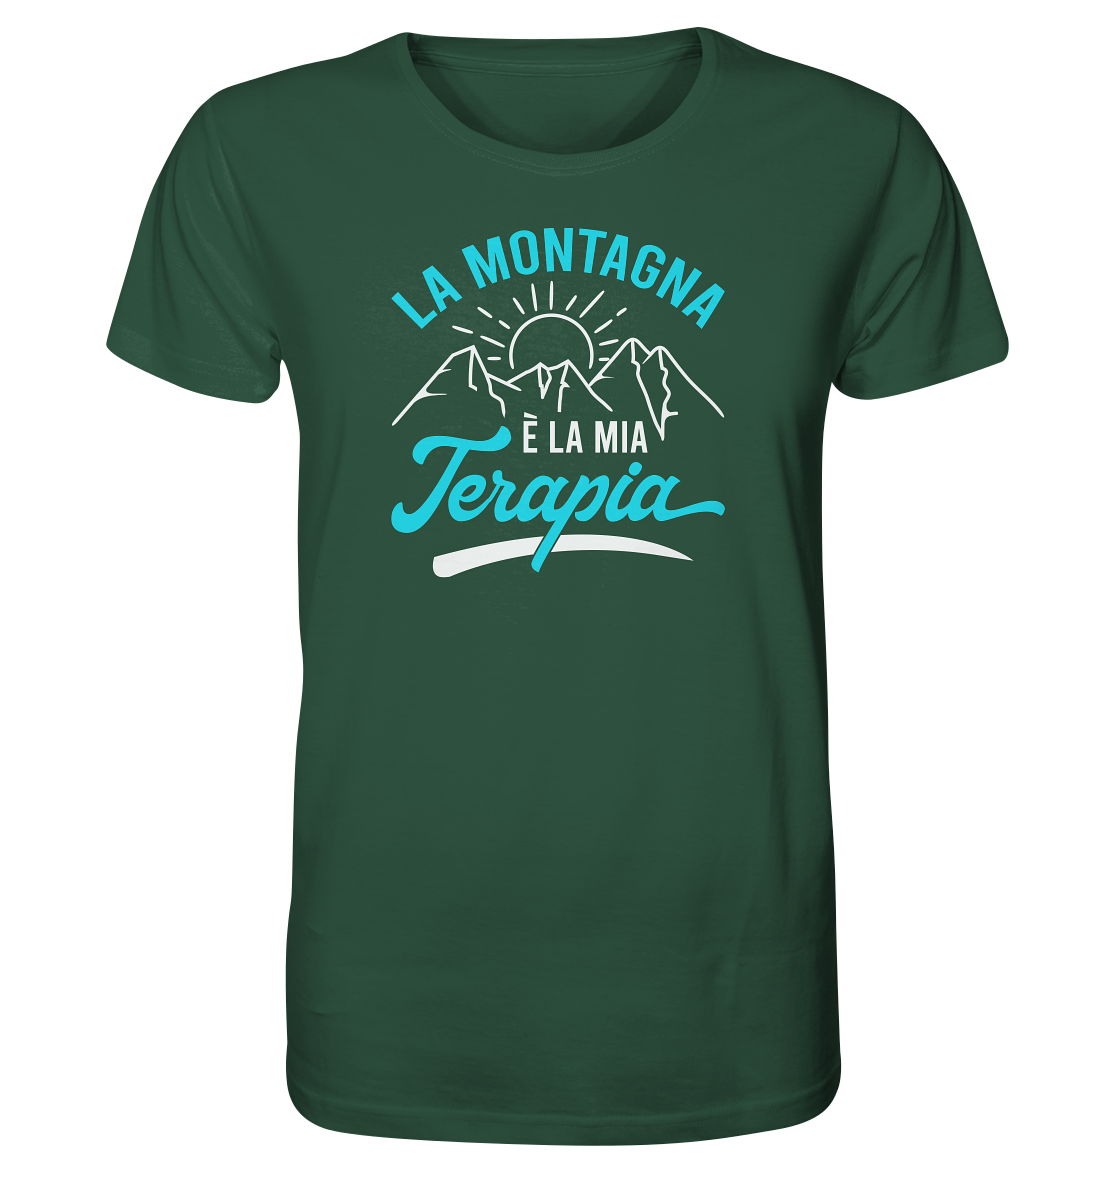 La montagna è la mia terapia - Organic Shirt